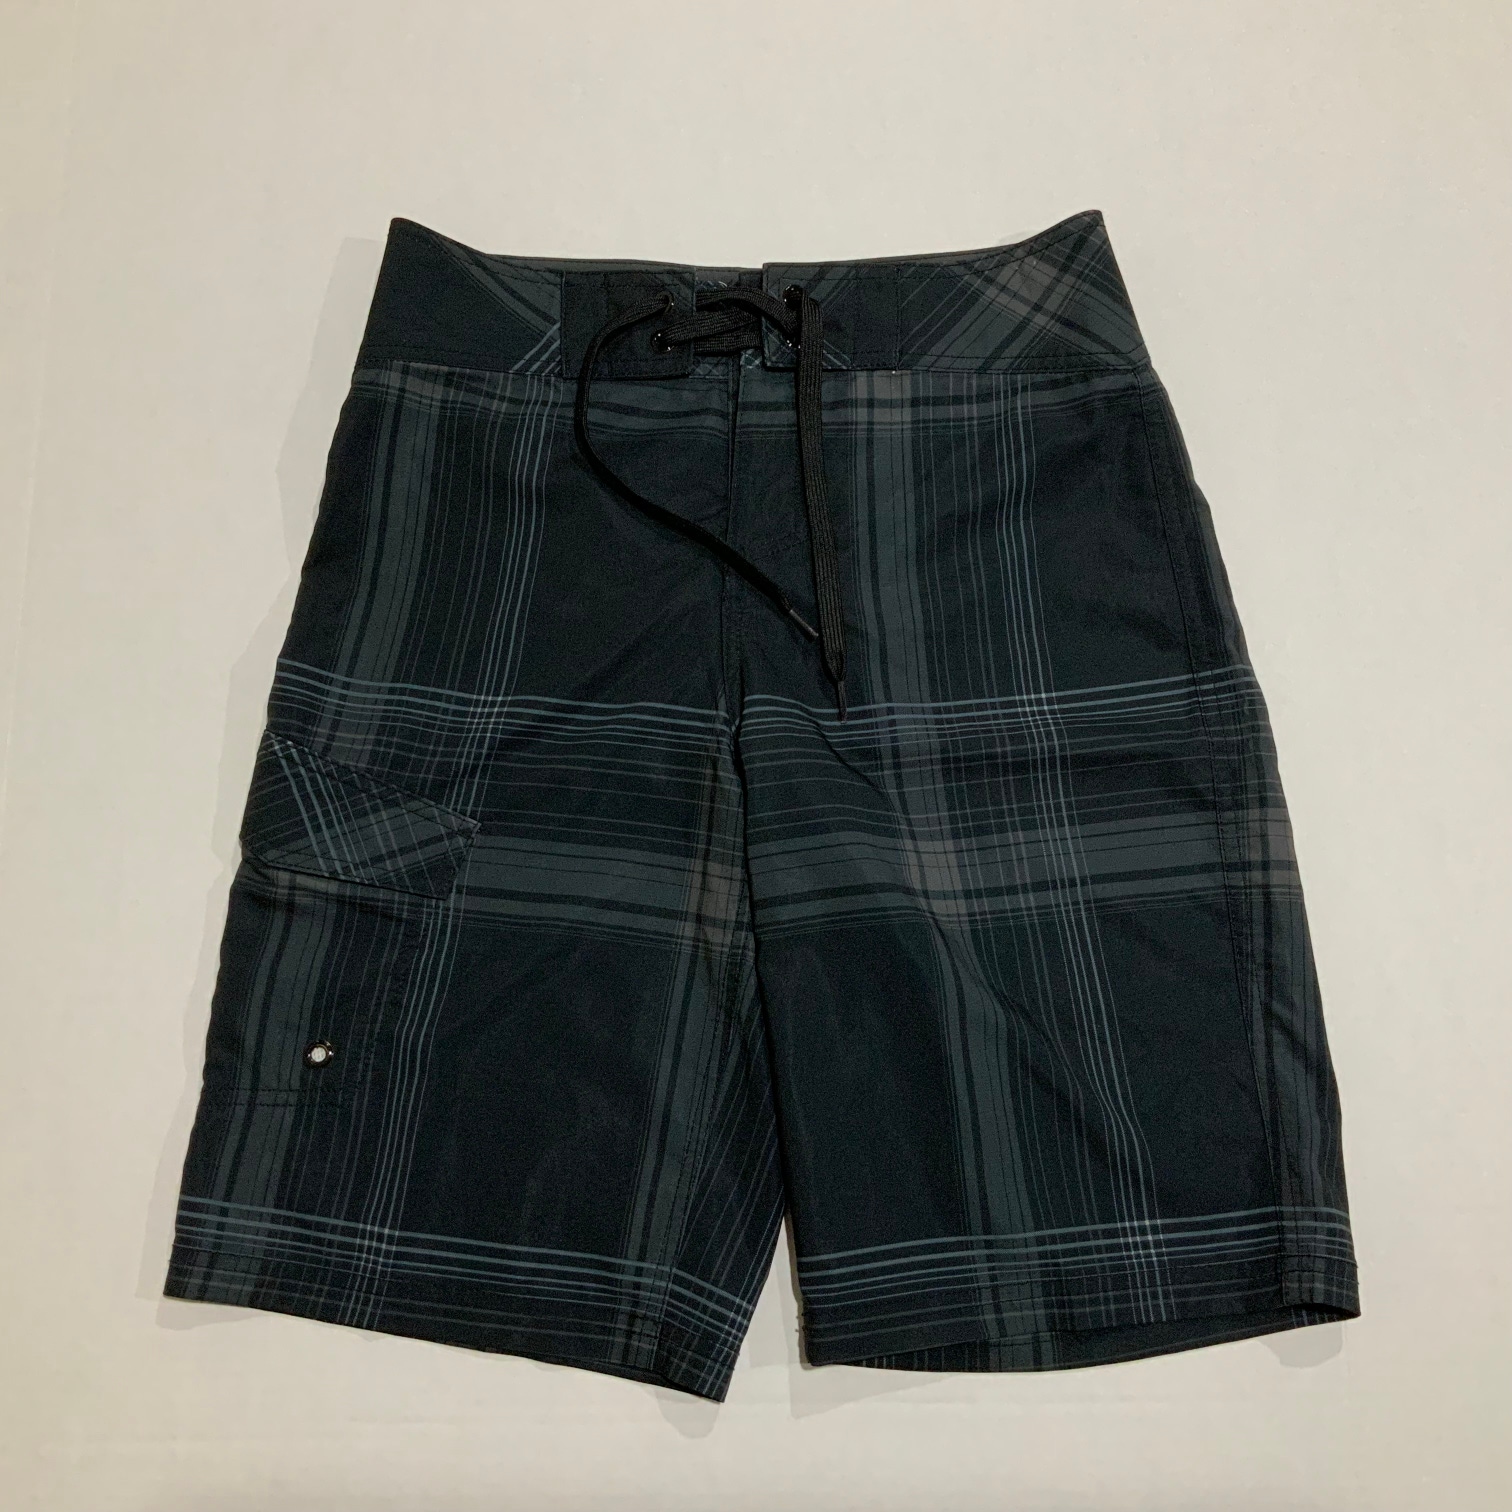 Men’s Board Shorts - Swimwear - Gray - Size 28